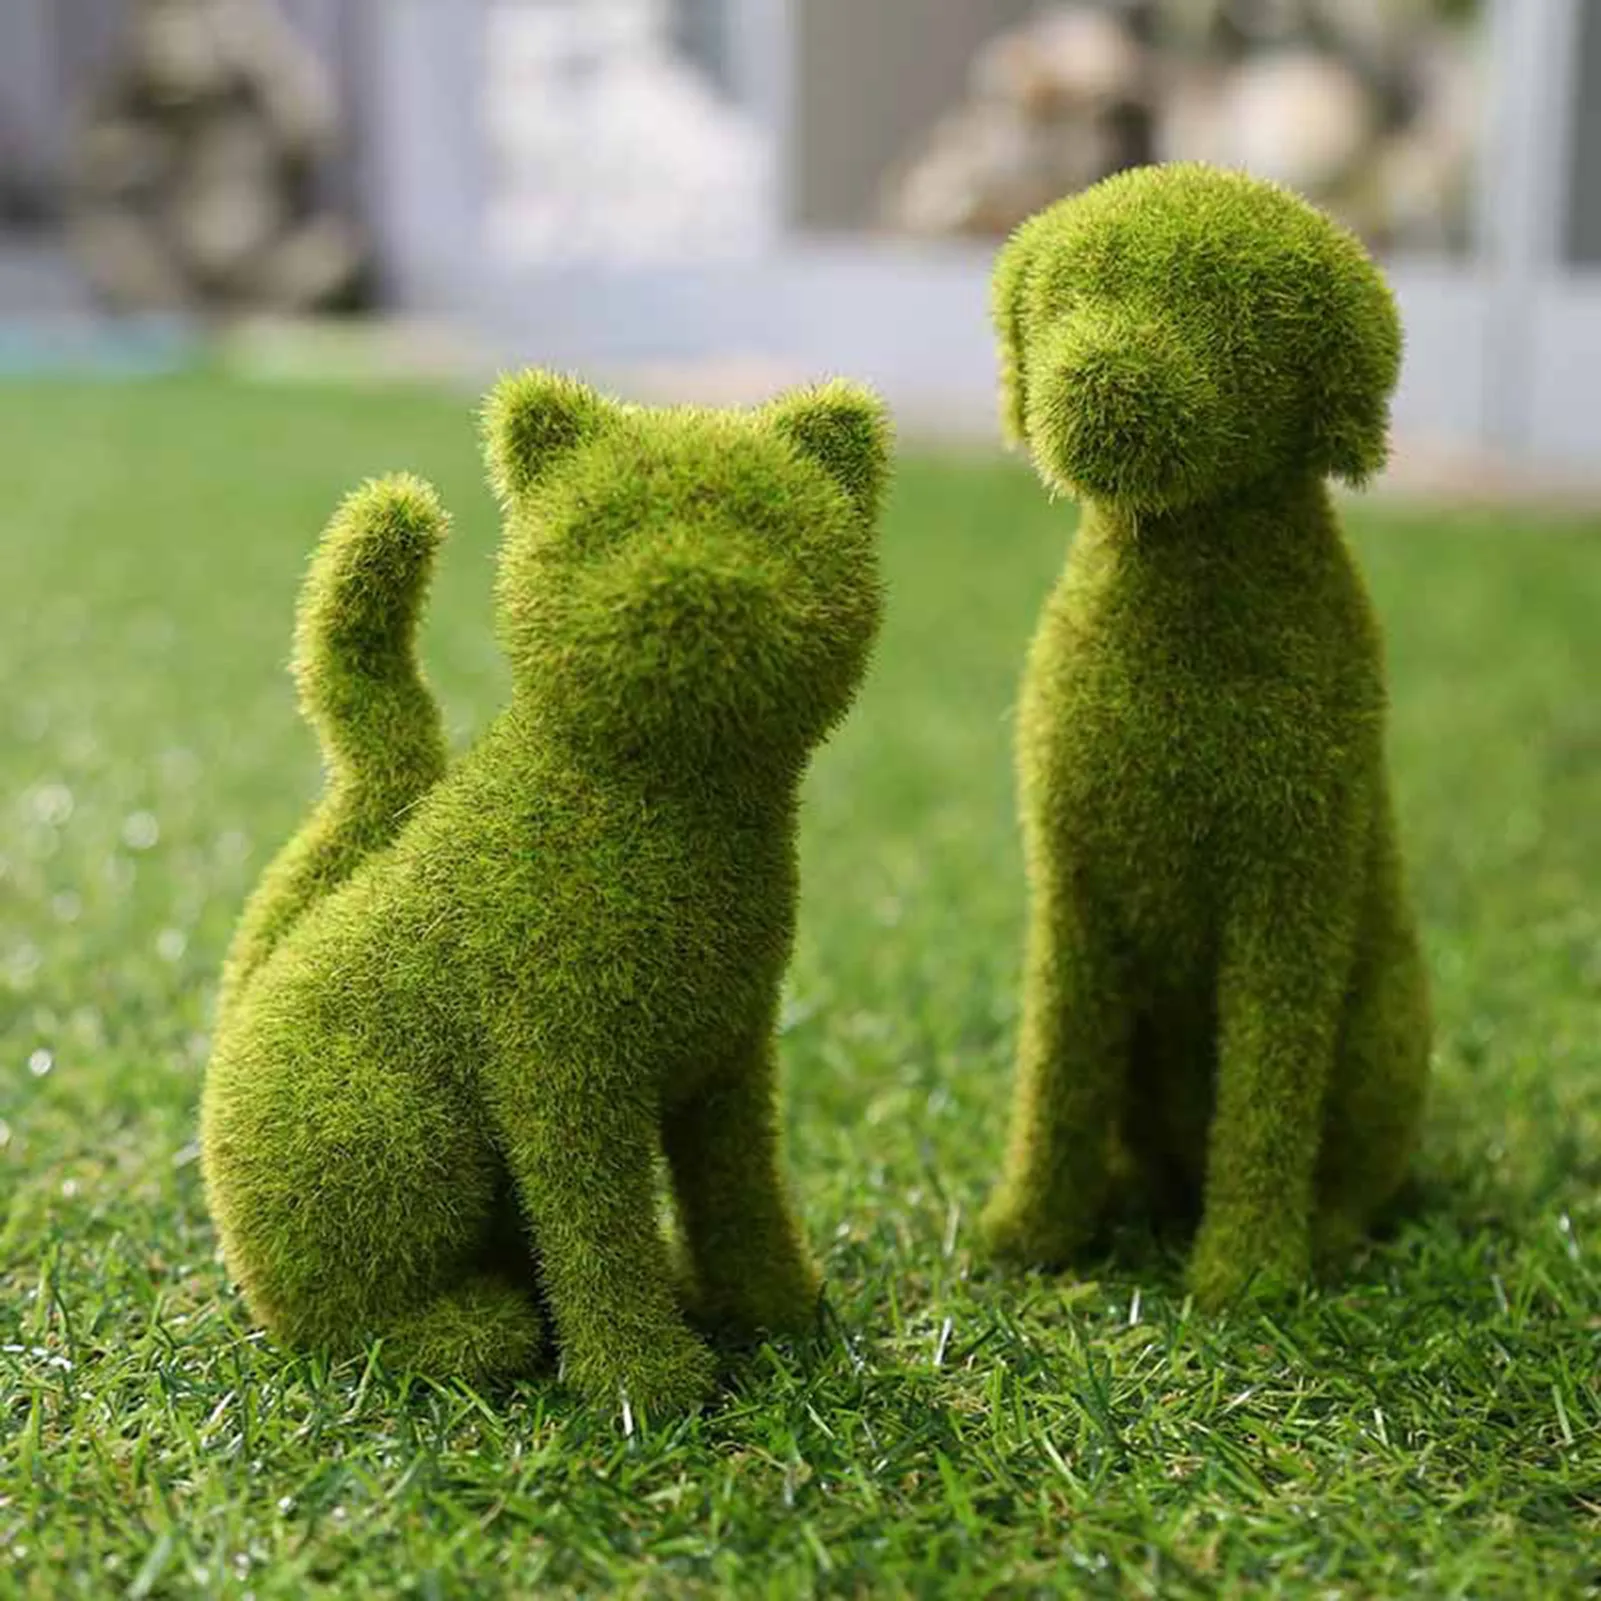 

Outdoor Courtyard Cute Dog Statues Grass Green Simulation Flocking Puppy Ornaments Moss Grass Puppy Cat Figurines Garden Decor